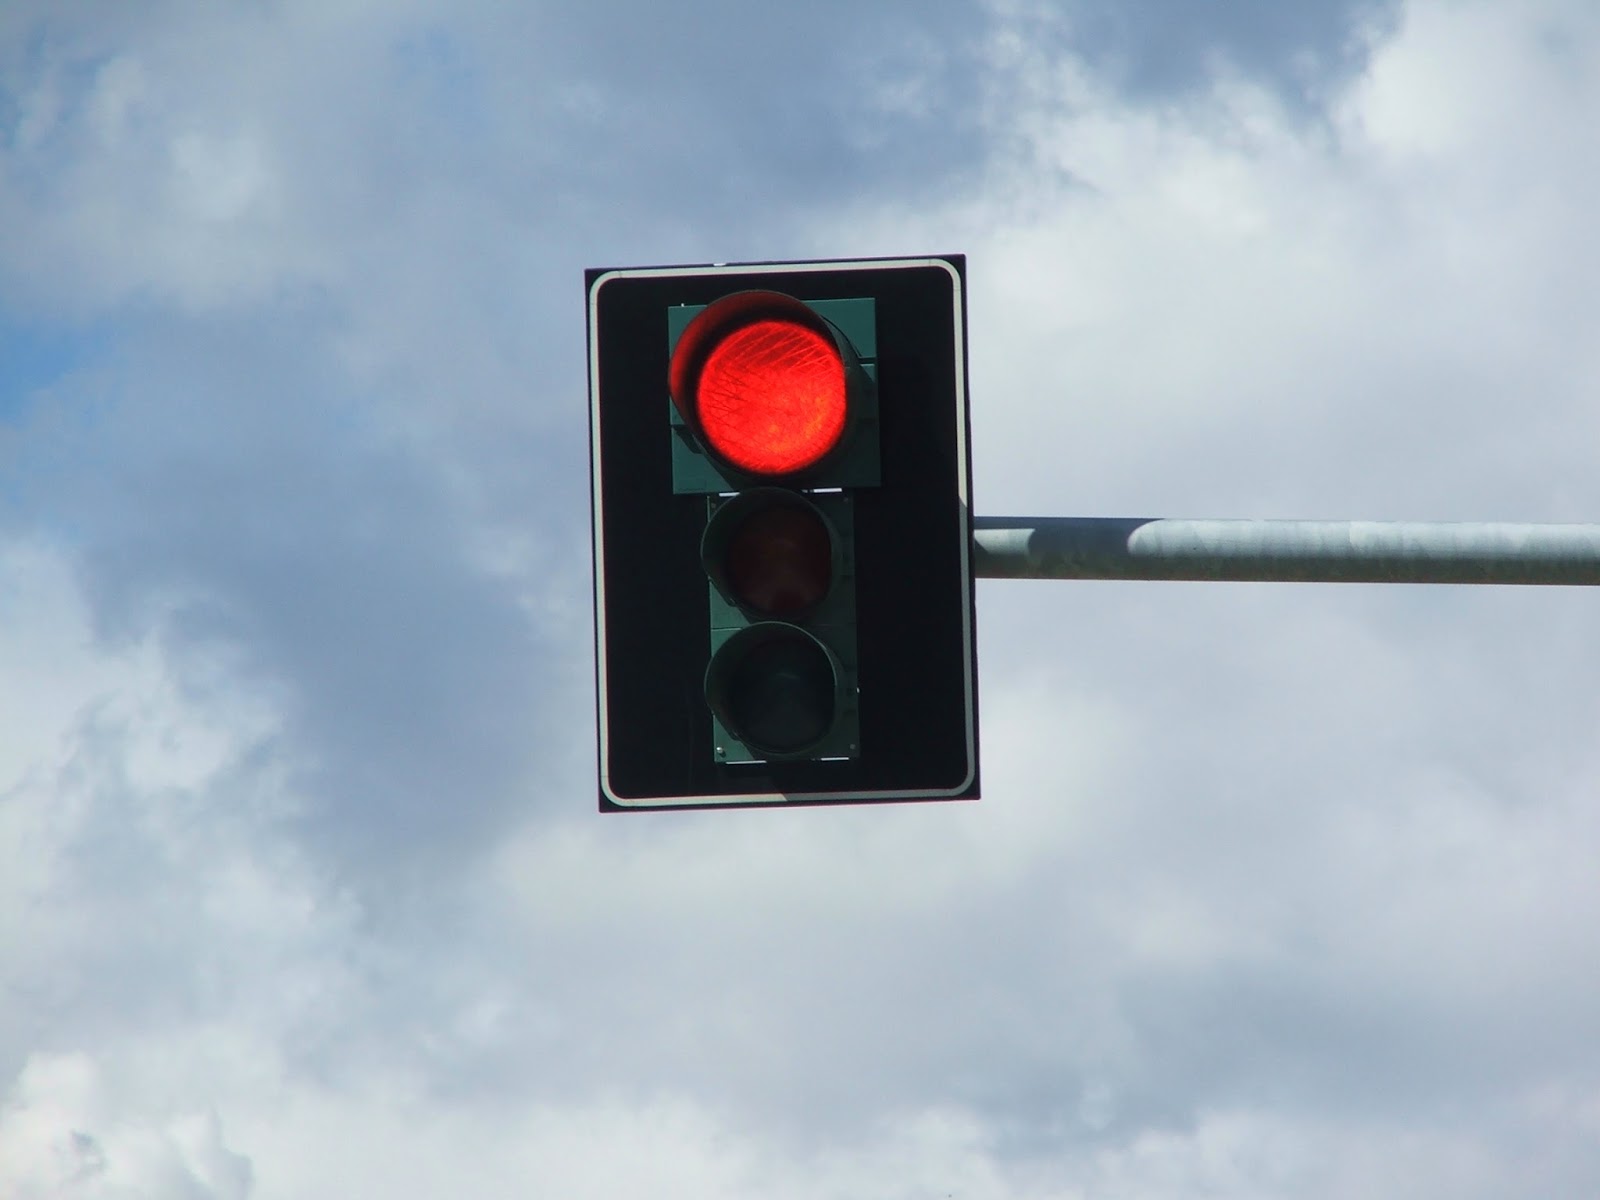 Ter de parar em TODOS os semáforos Vermelhos!